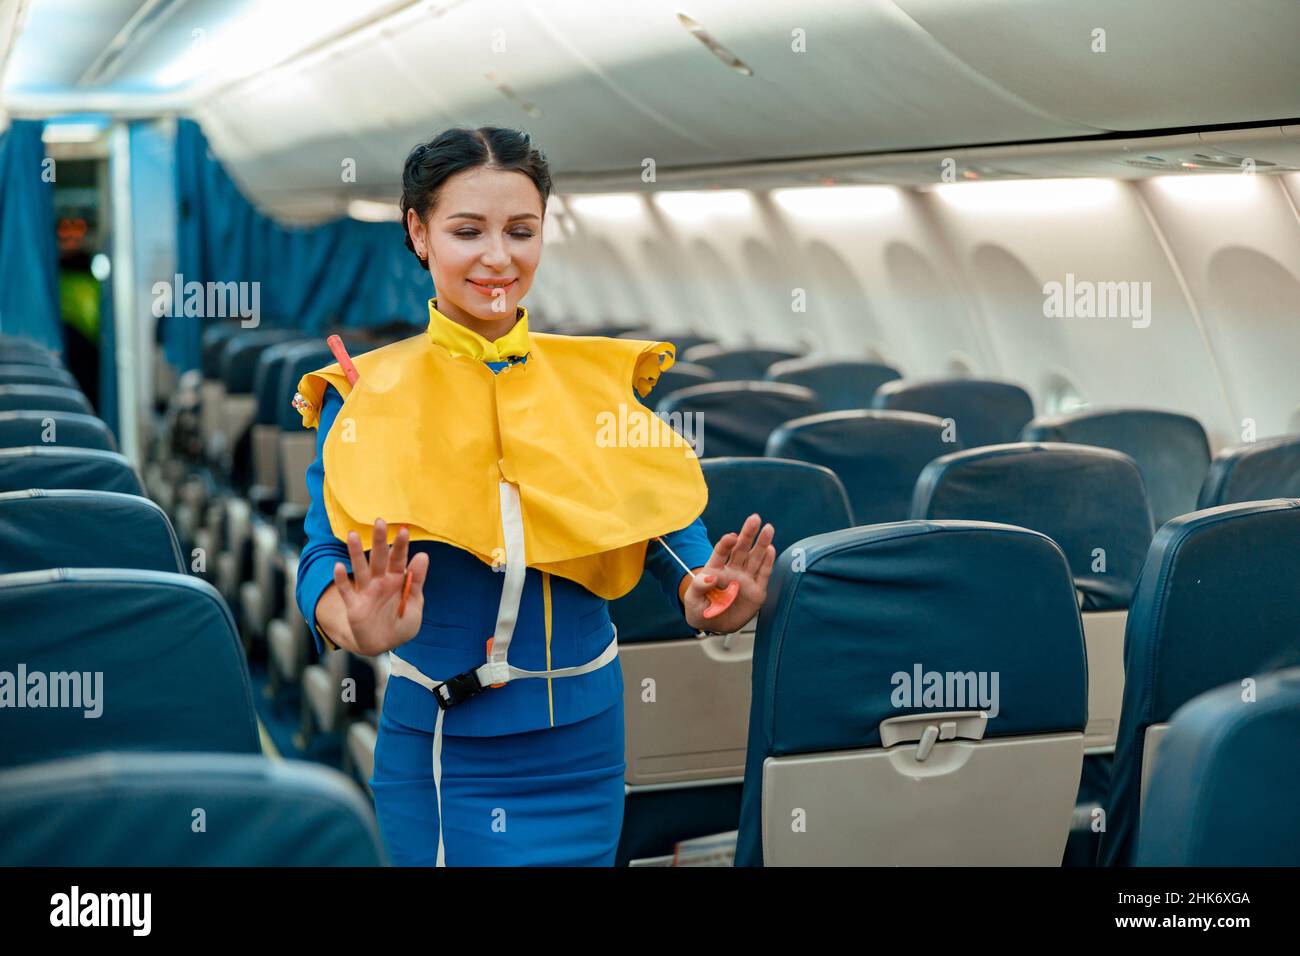 Schwimmweste KLM Boeing 747-400 // Ablaufjahr >= 2020 Flugzeug Life Vest